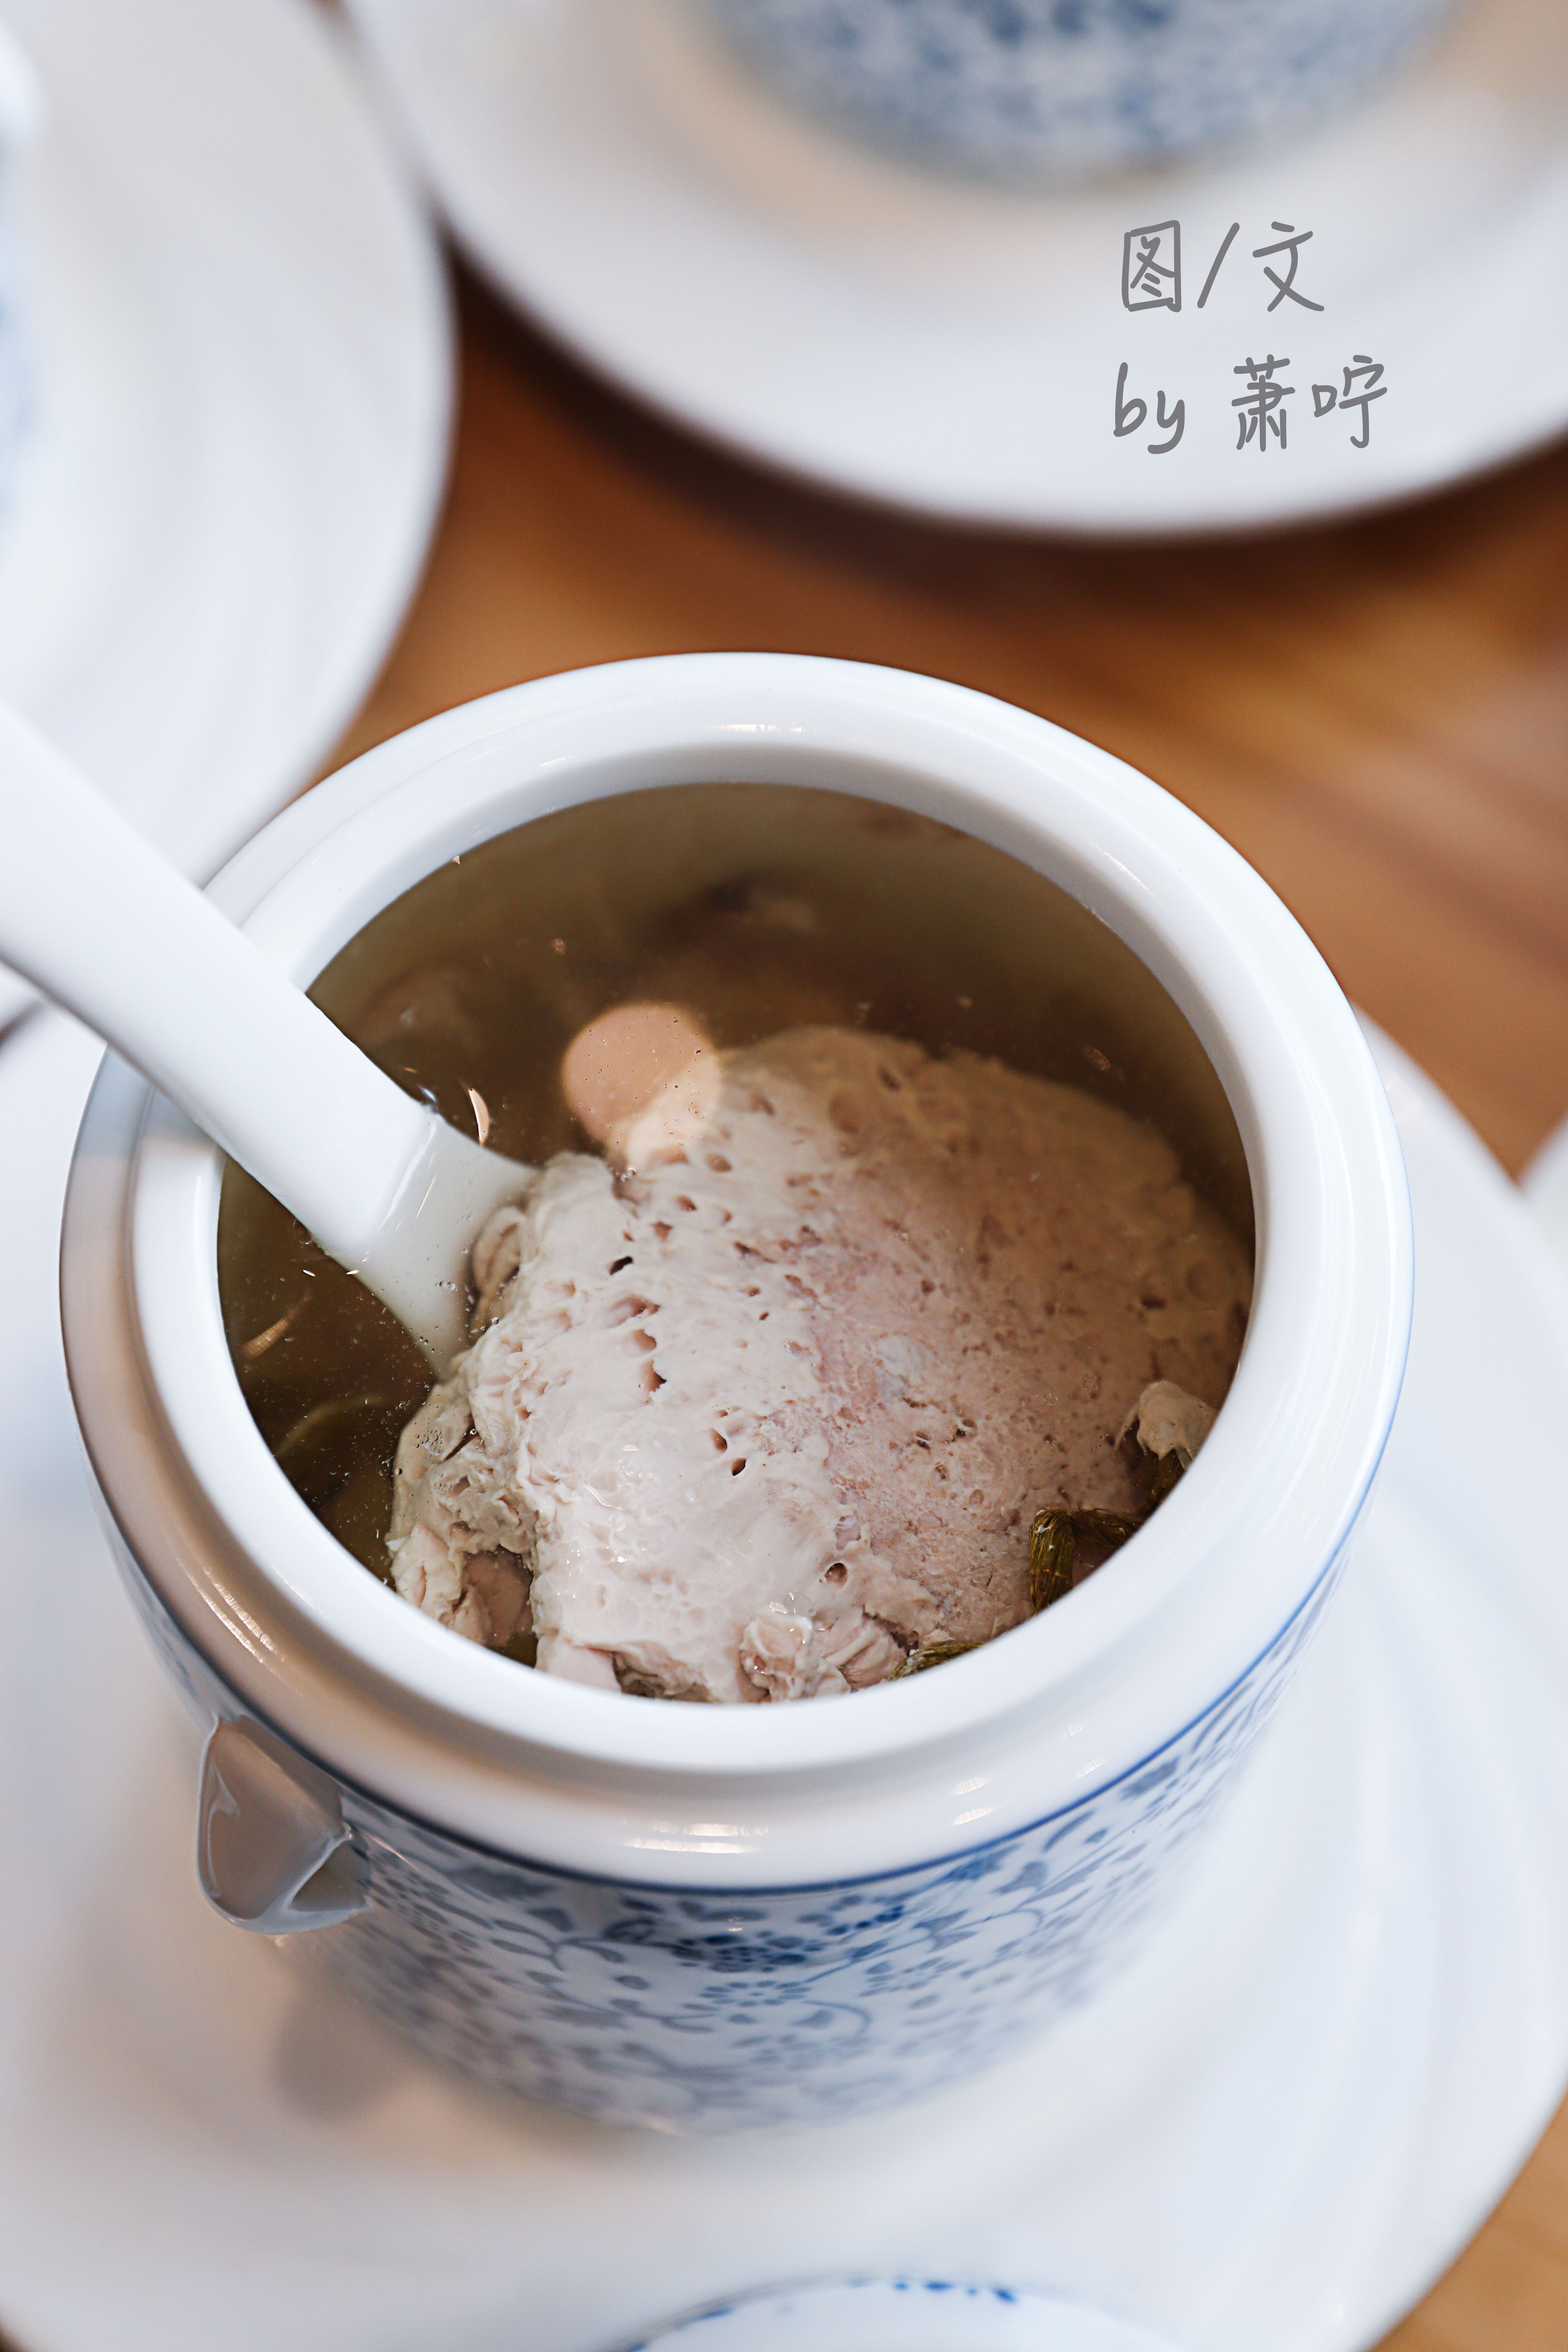 石斛炖黑猪肉,石斛有清热的作用,同样特别适合夏天炖汤吃